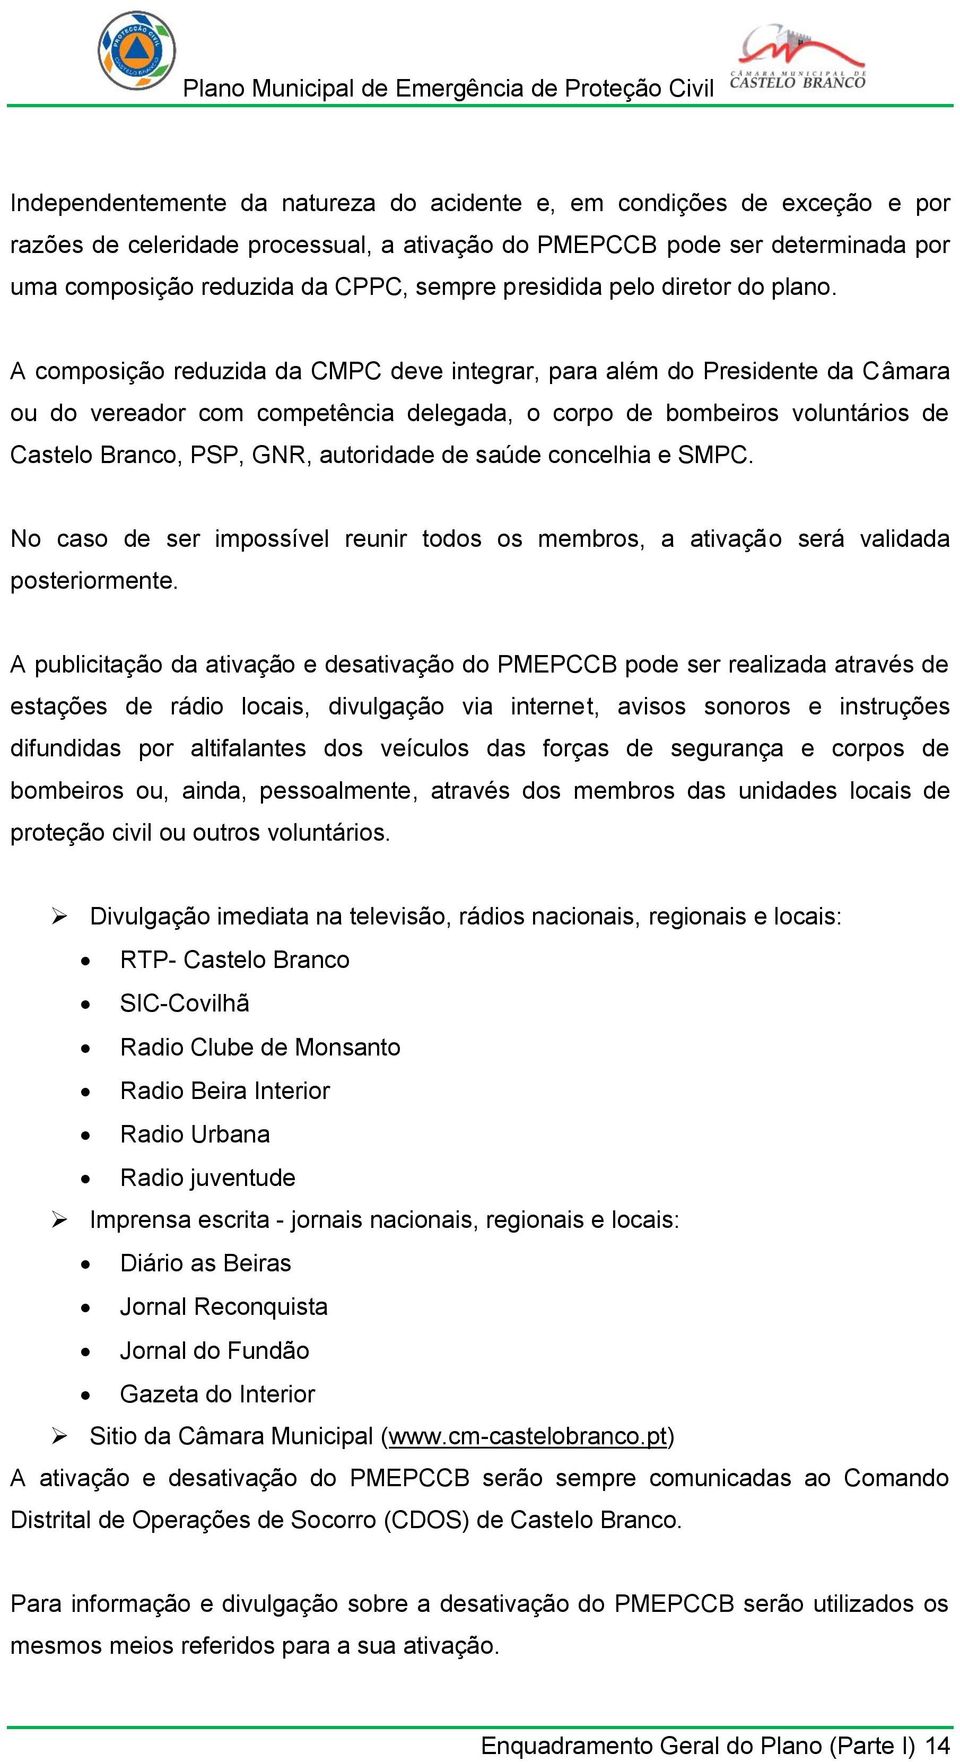 A composição reduzida da CMPC deve integrar, para além do Presidente da Câmara ou do vereador com competência delegada, o corpo de bombeiros voluntários de Castelo Branco, PSP, GNR, autoridade de